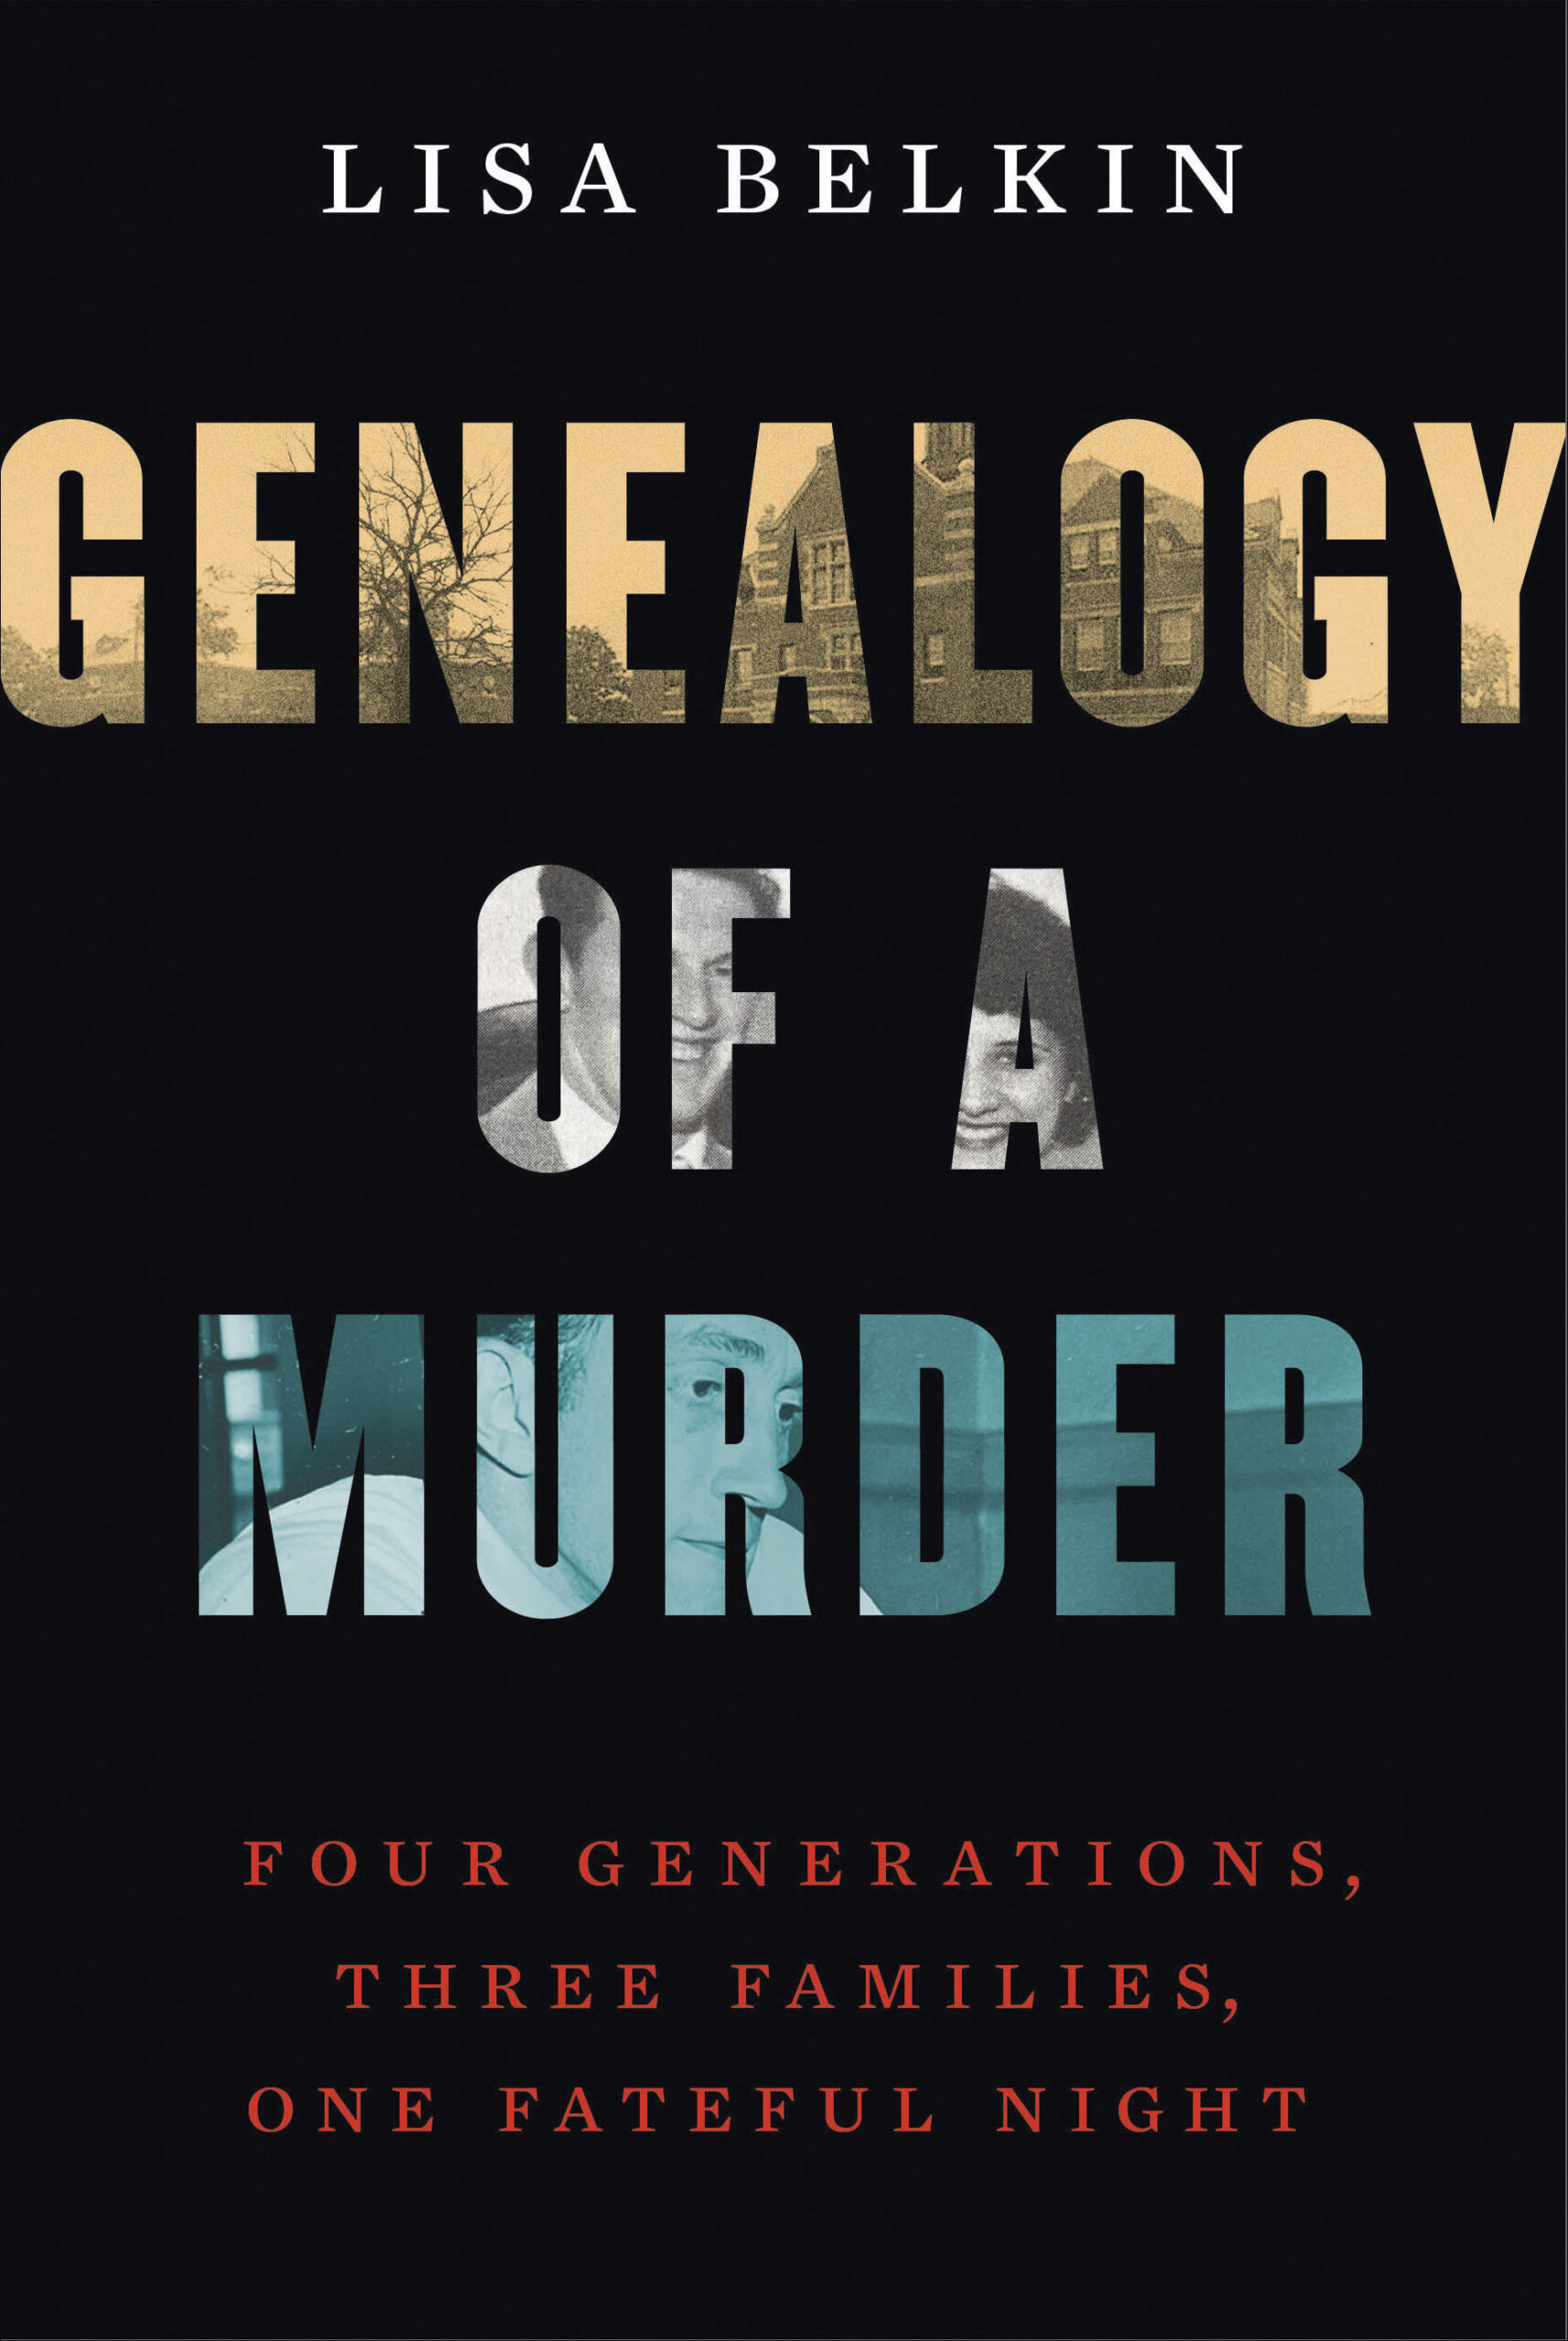 Cover of GENEALOGY OF A MURDER by Lisa Belkin